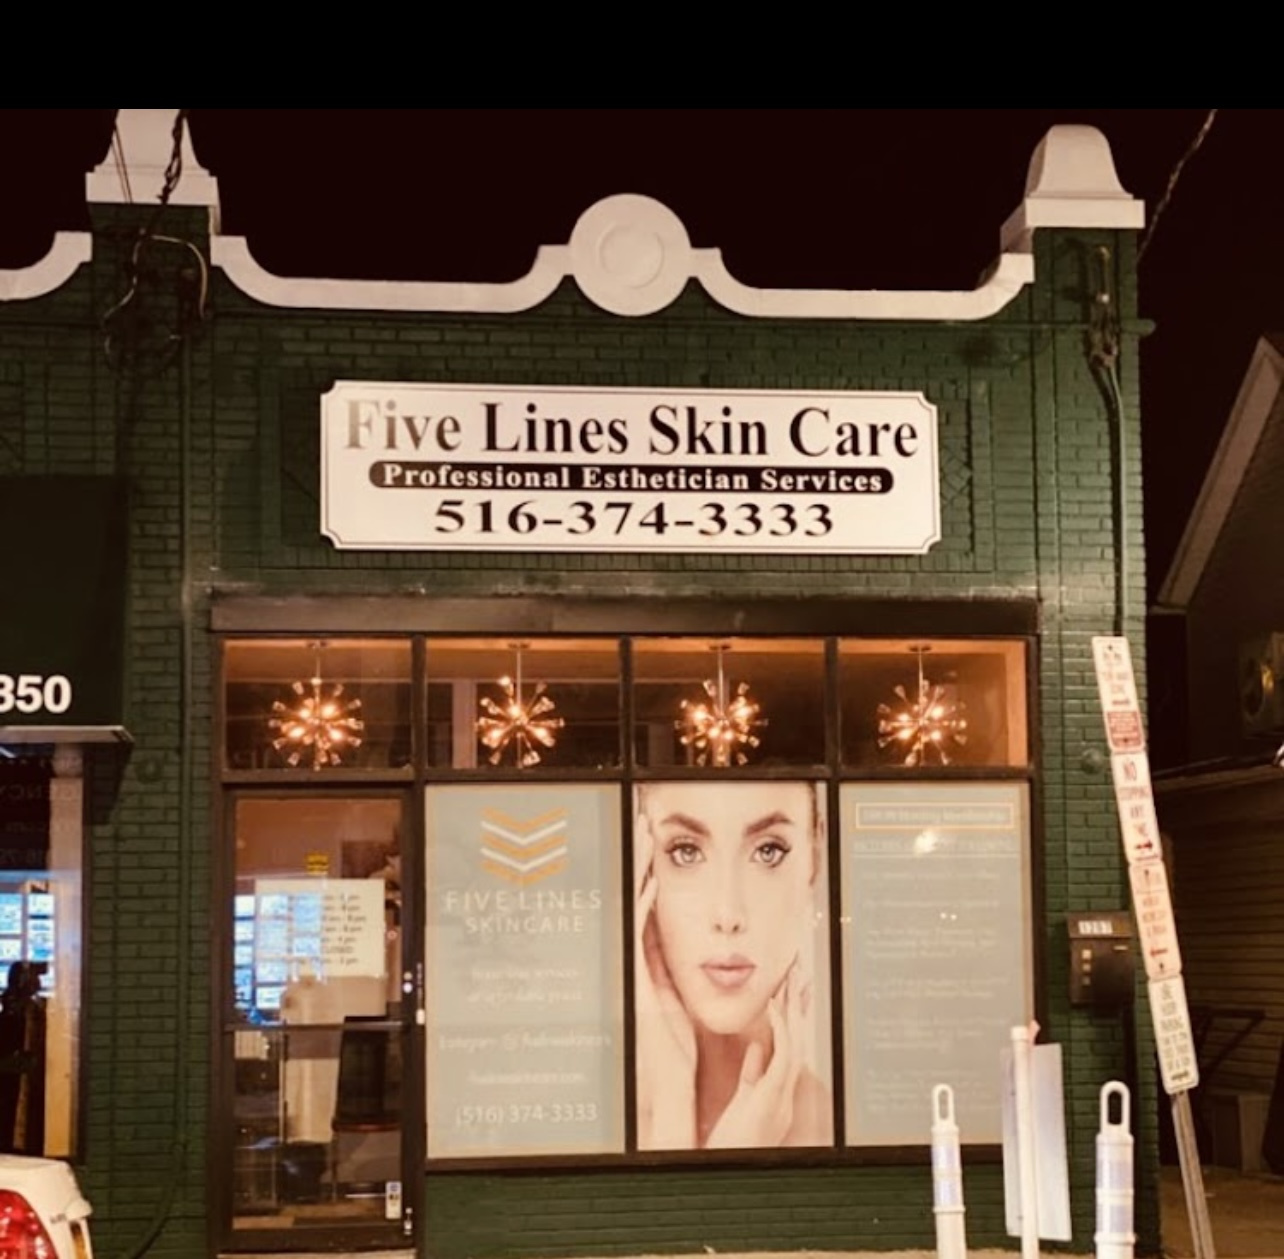 Skin Care Business in Hewlett, Long Island 